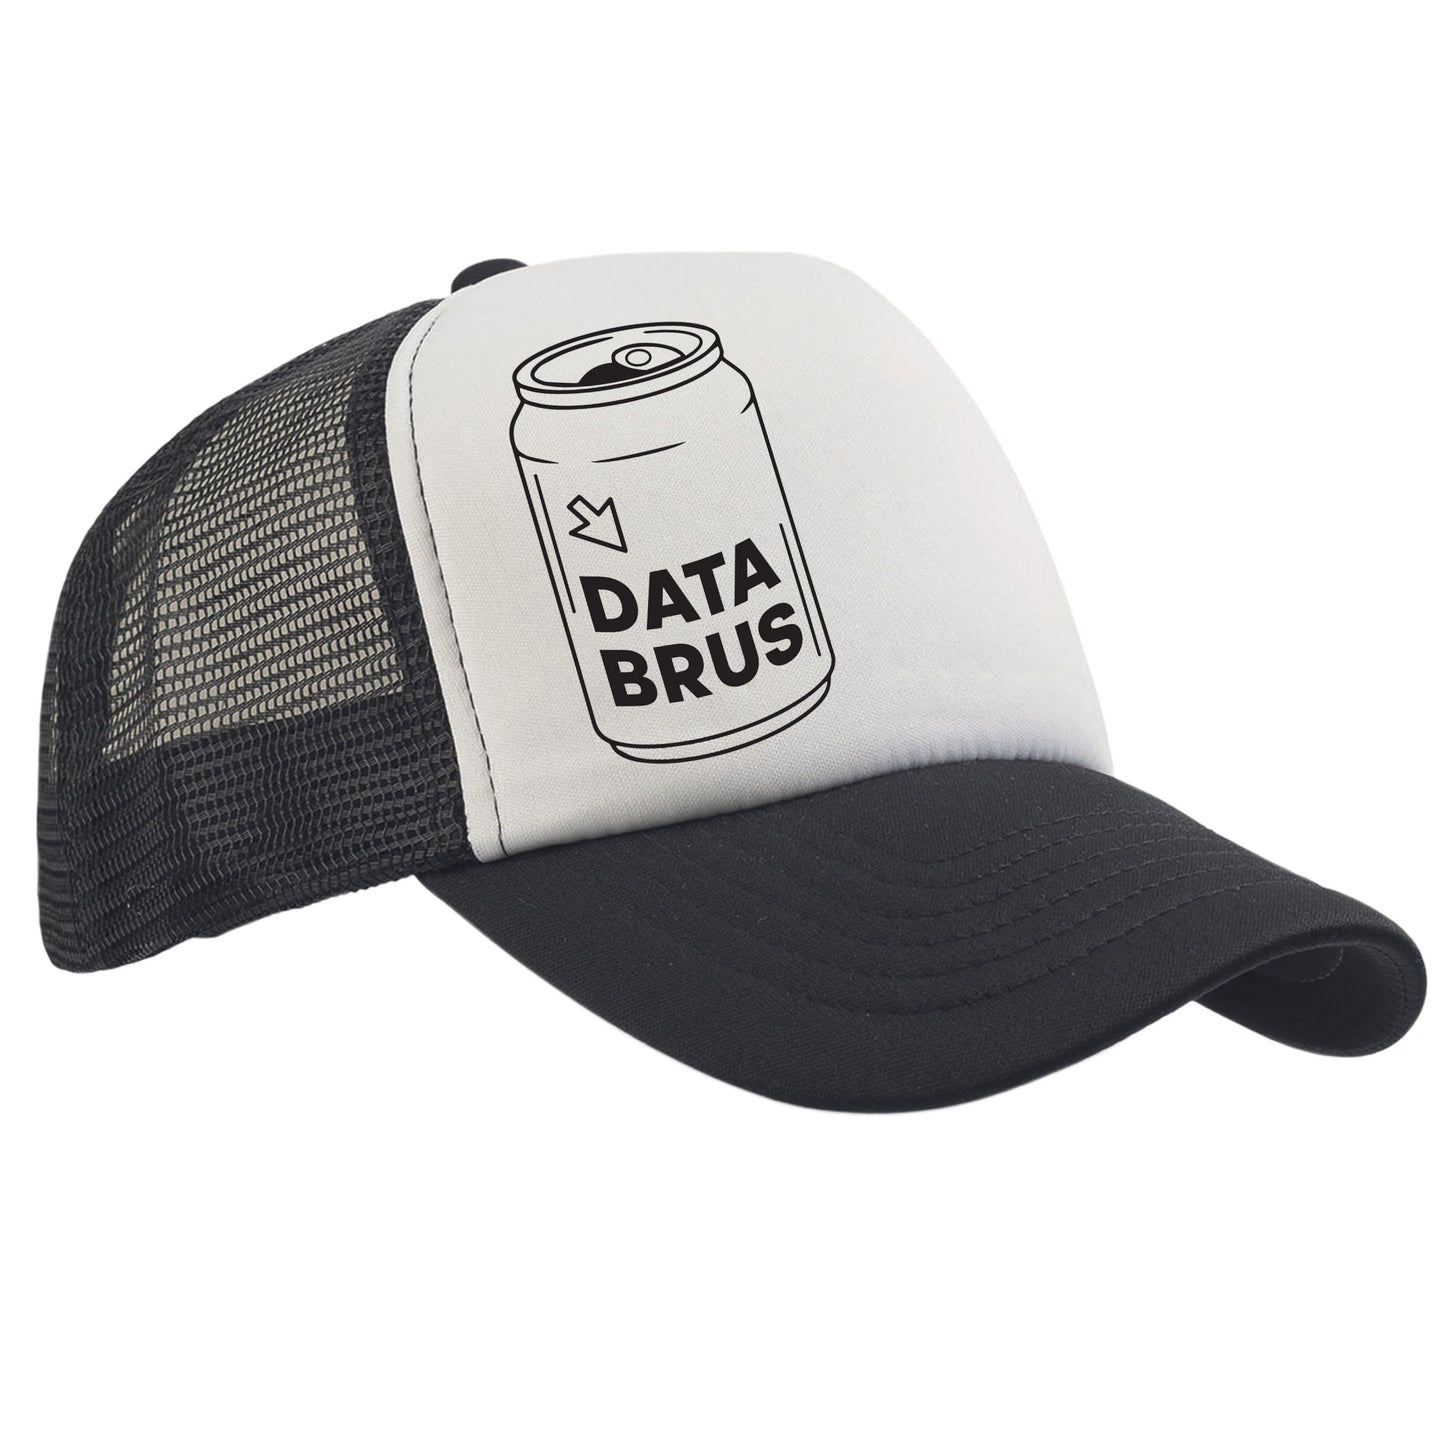 Databrus - Caps